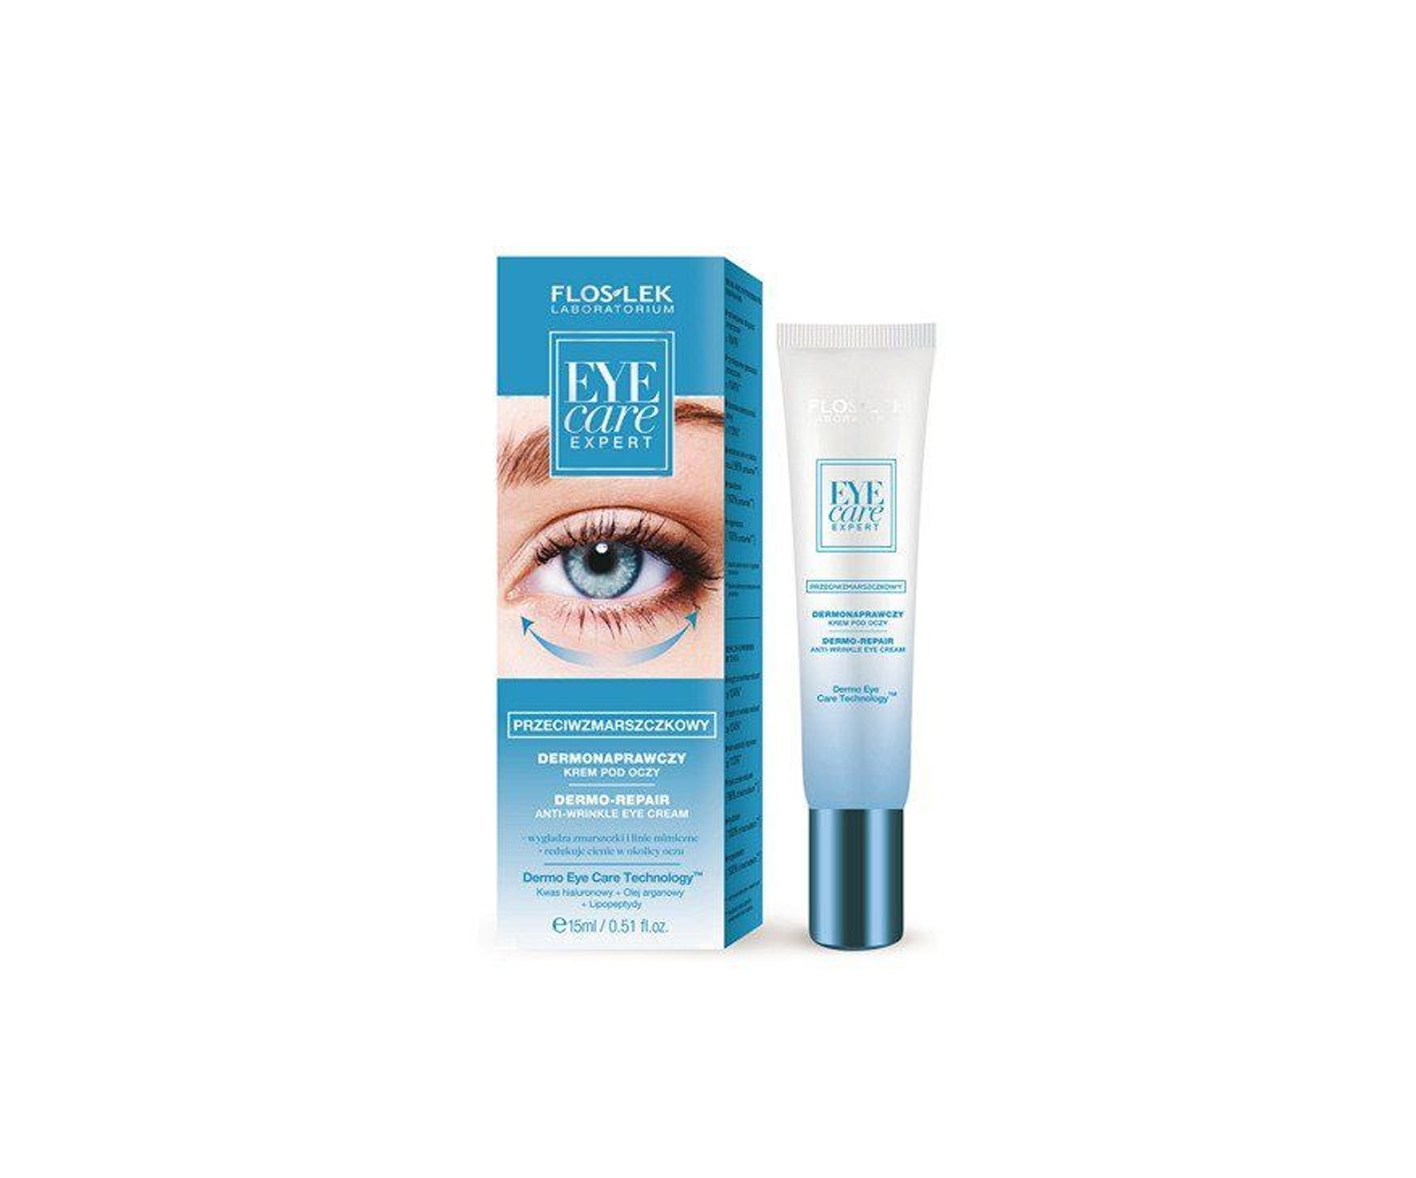  Floslek, Eye Care Expert, Dermorepair Anti-Wrinkle Eye Cream